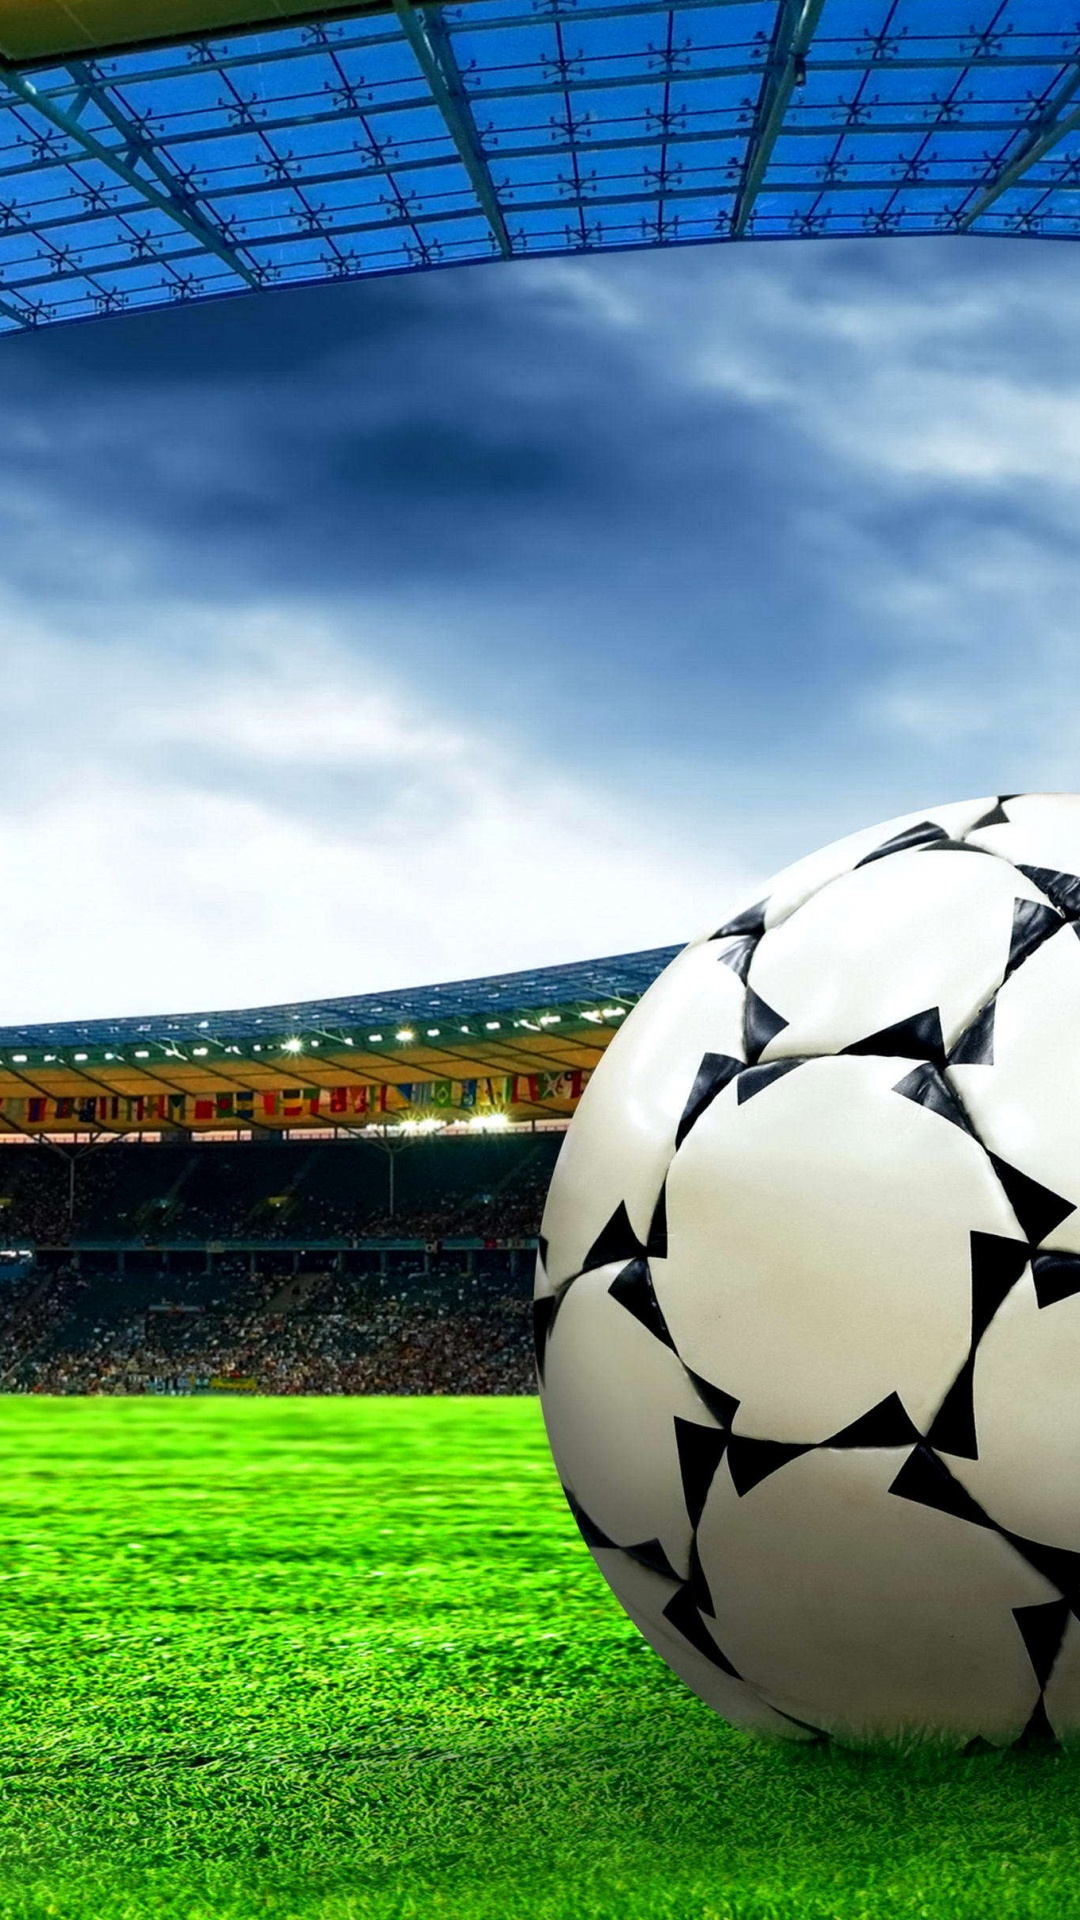 Ballon de Football Sur Terrain D'herbe Verte Sous Des Nuages Blancs Pendant la Journée. Wallpaper in 1080x1920 Resolution